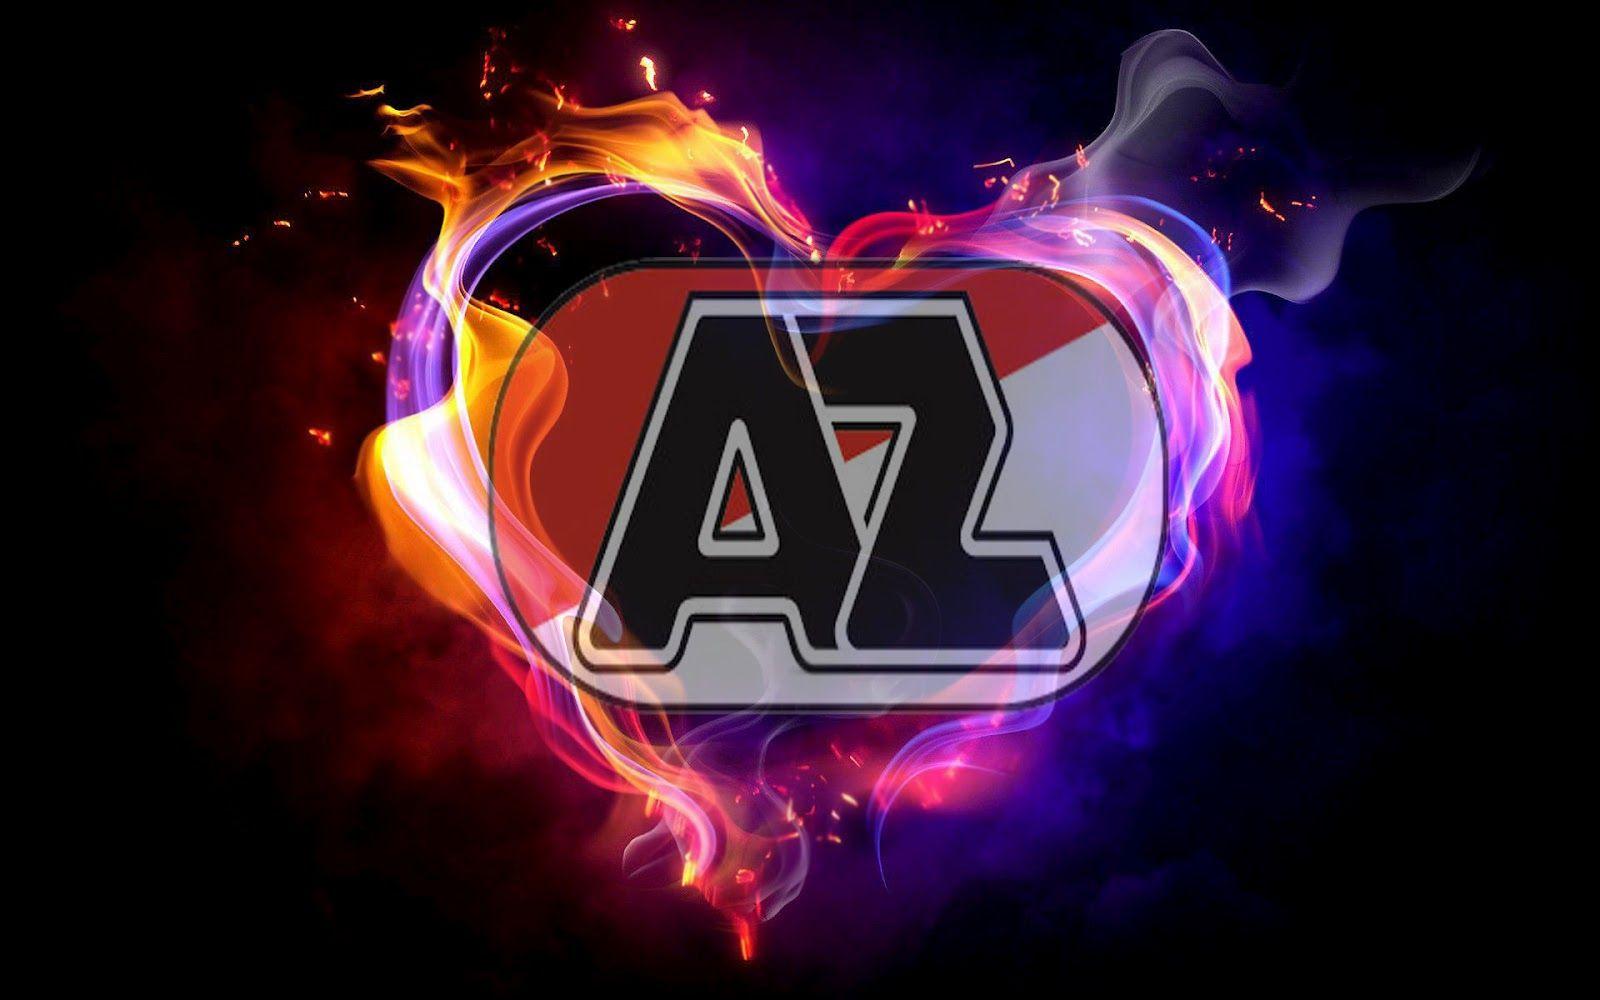 AZ Logo - Image - AZ logo 001.jpg | Football Wiki | FANDOM powered by Wikia